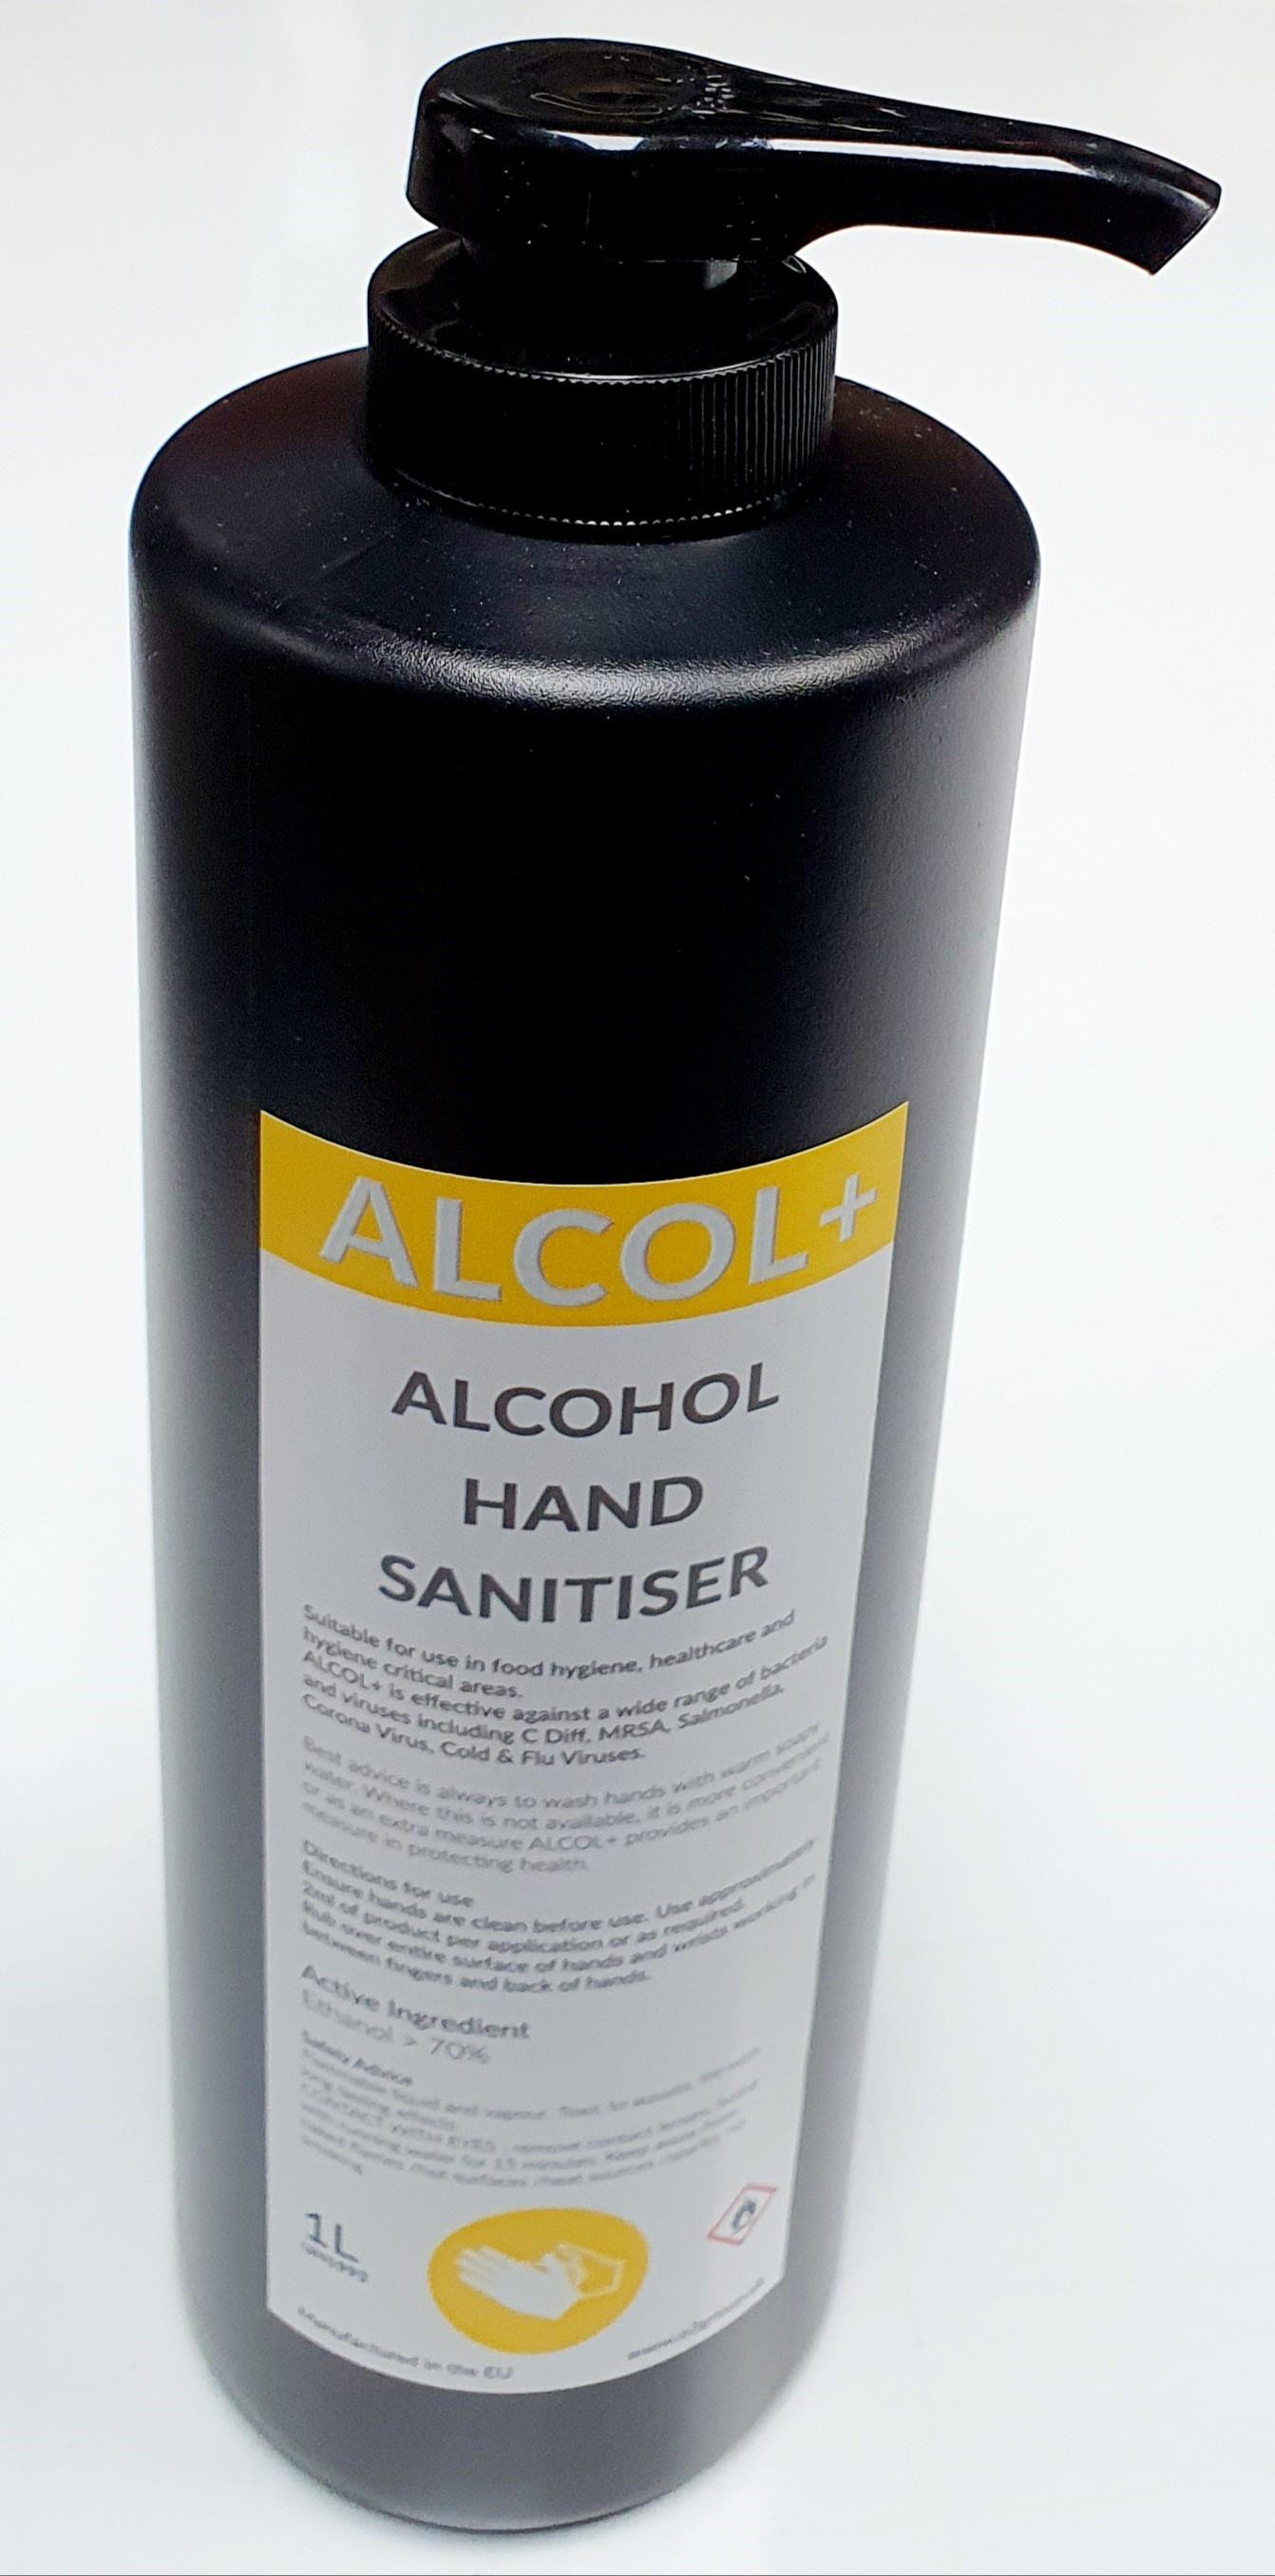 ALCOL+ Alcohol Hand Sanitiser - 70% Alcohol - 1 Litre Pump bottle